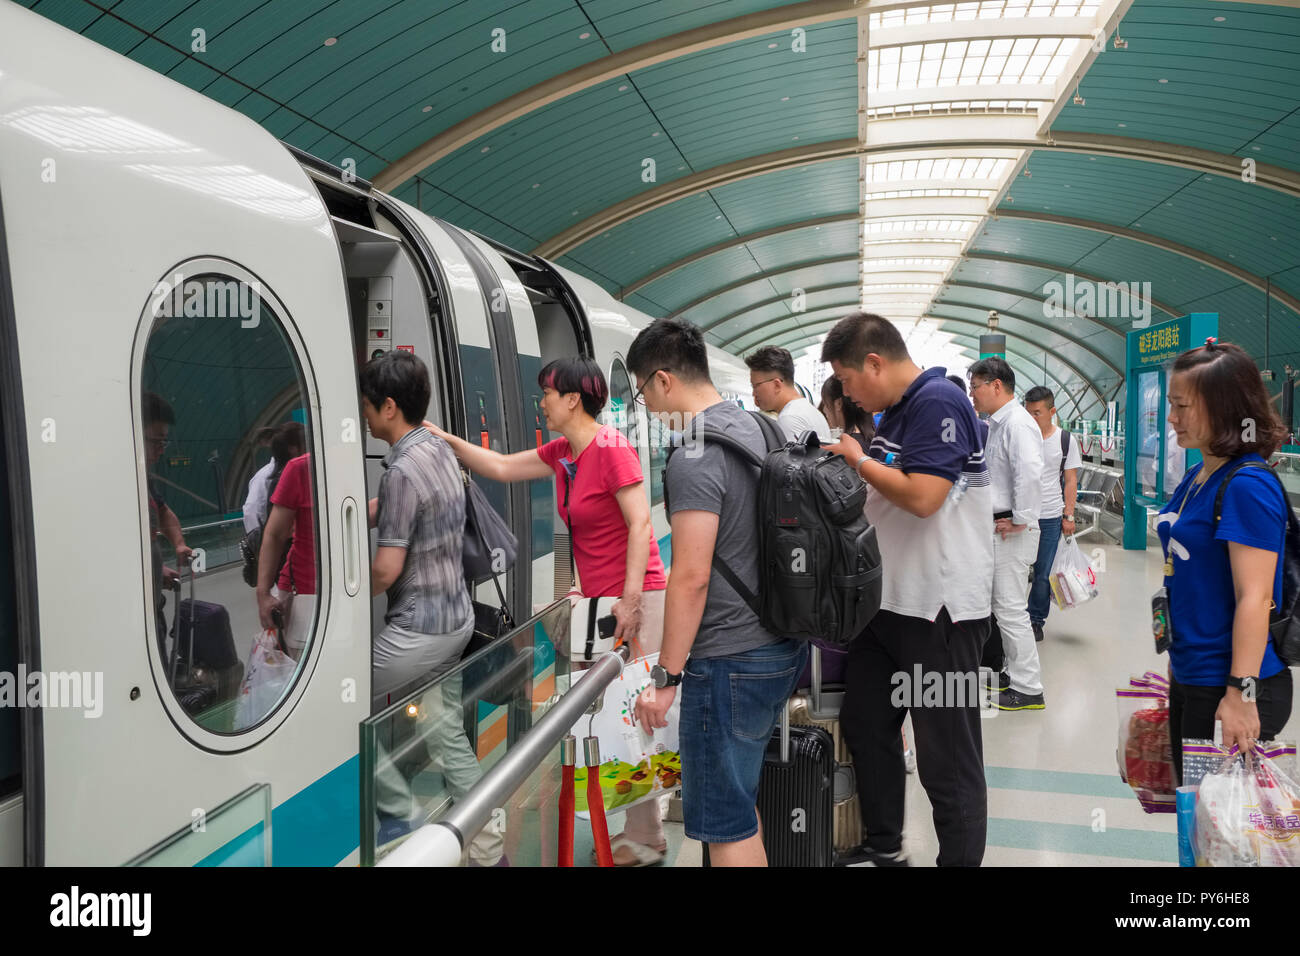 Les passagers d'un train Maglev à Shanghai, Chine, Asie Banque D'Images